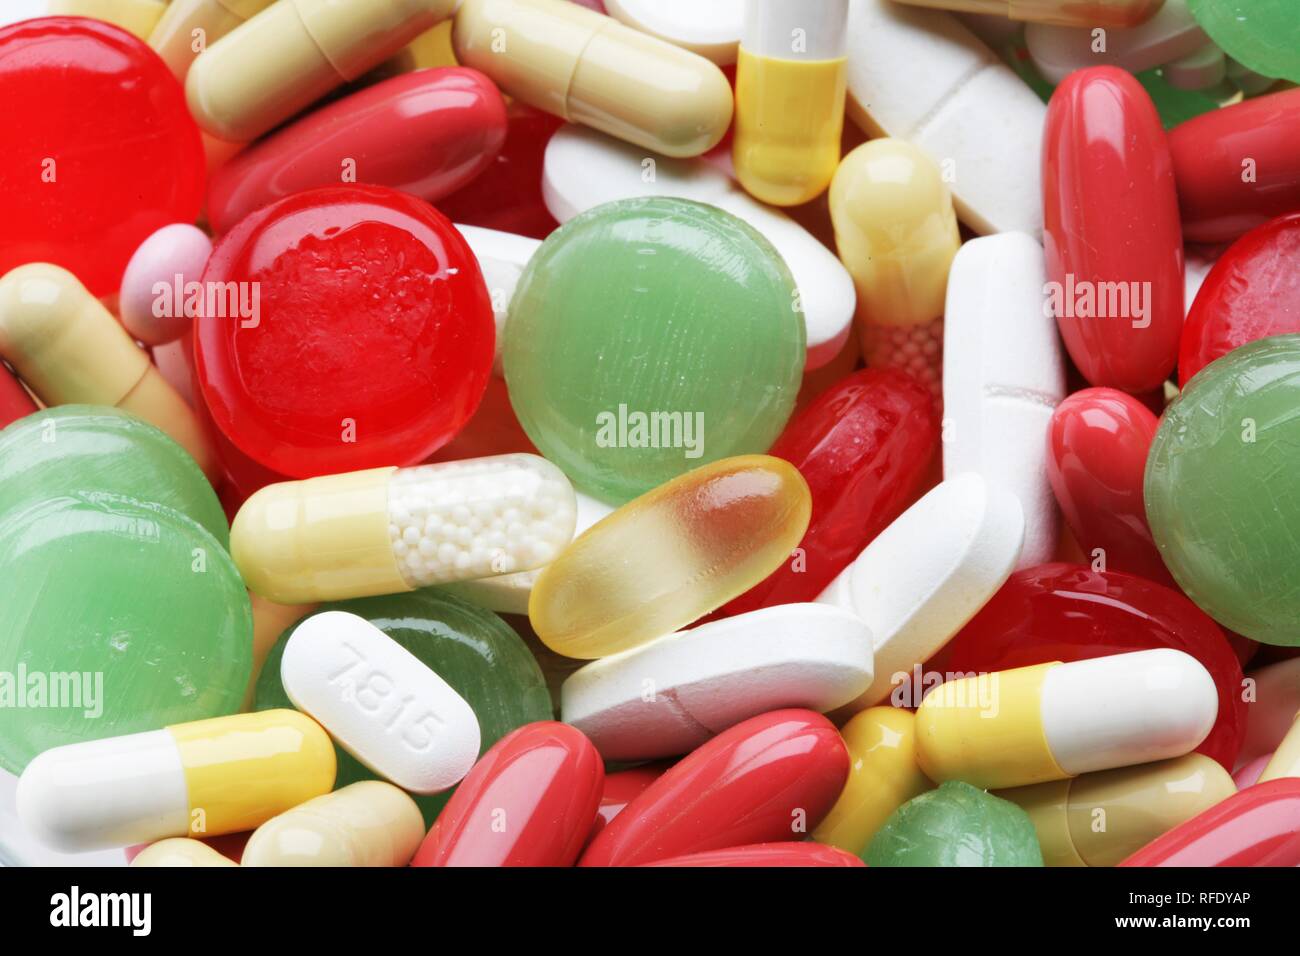 Medicaments Stock Photo